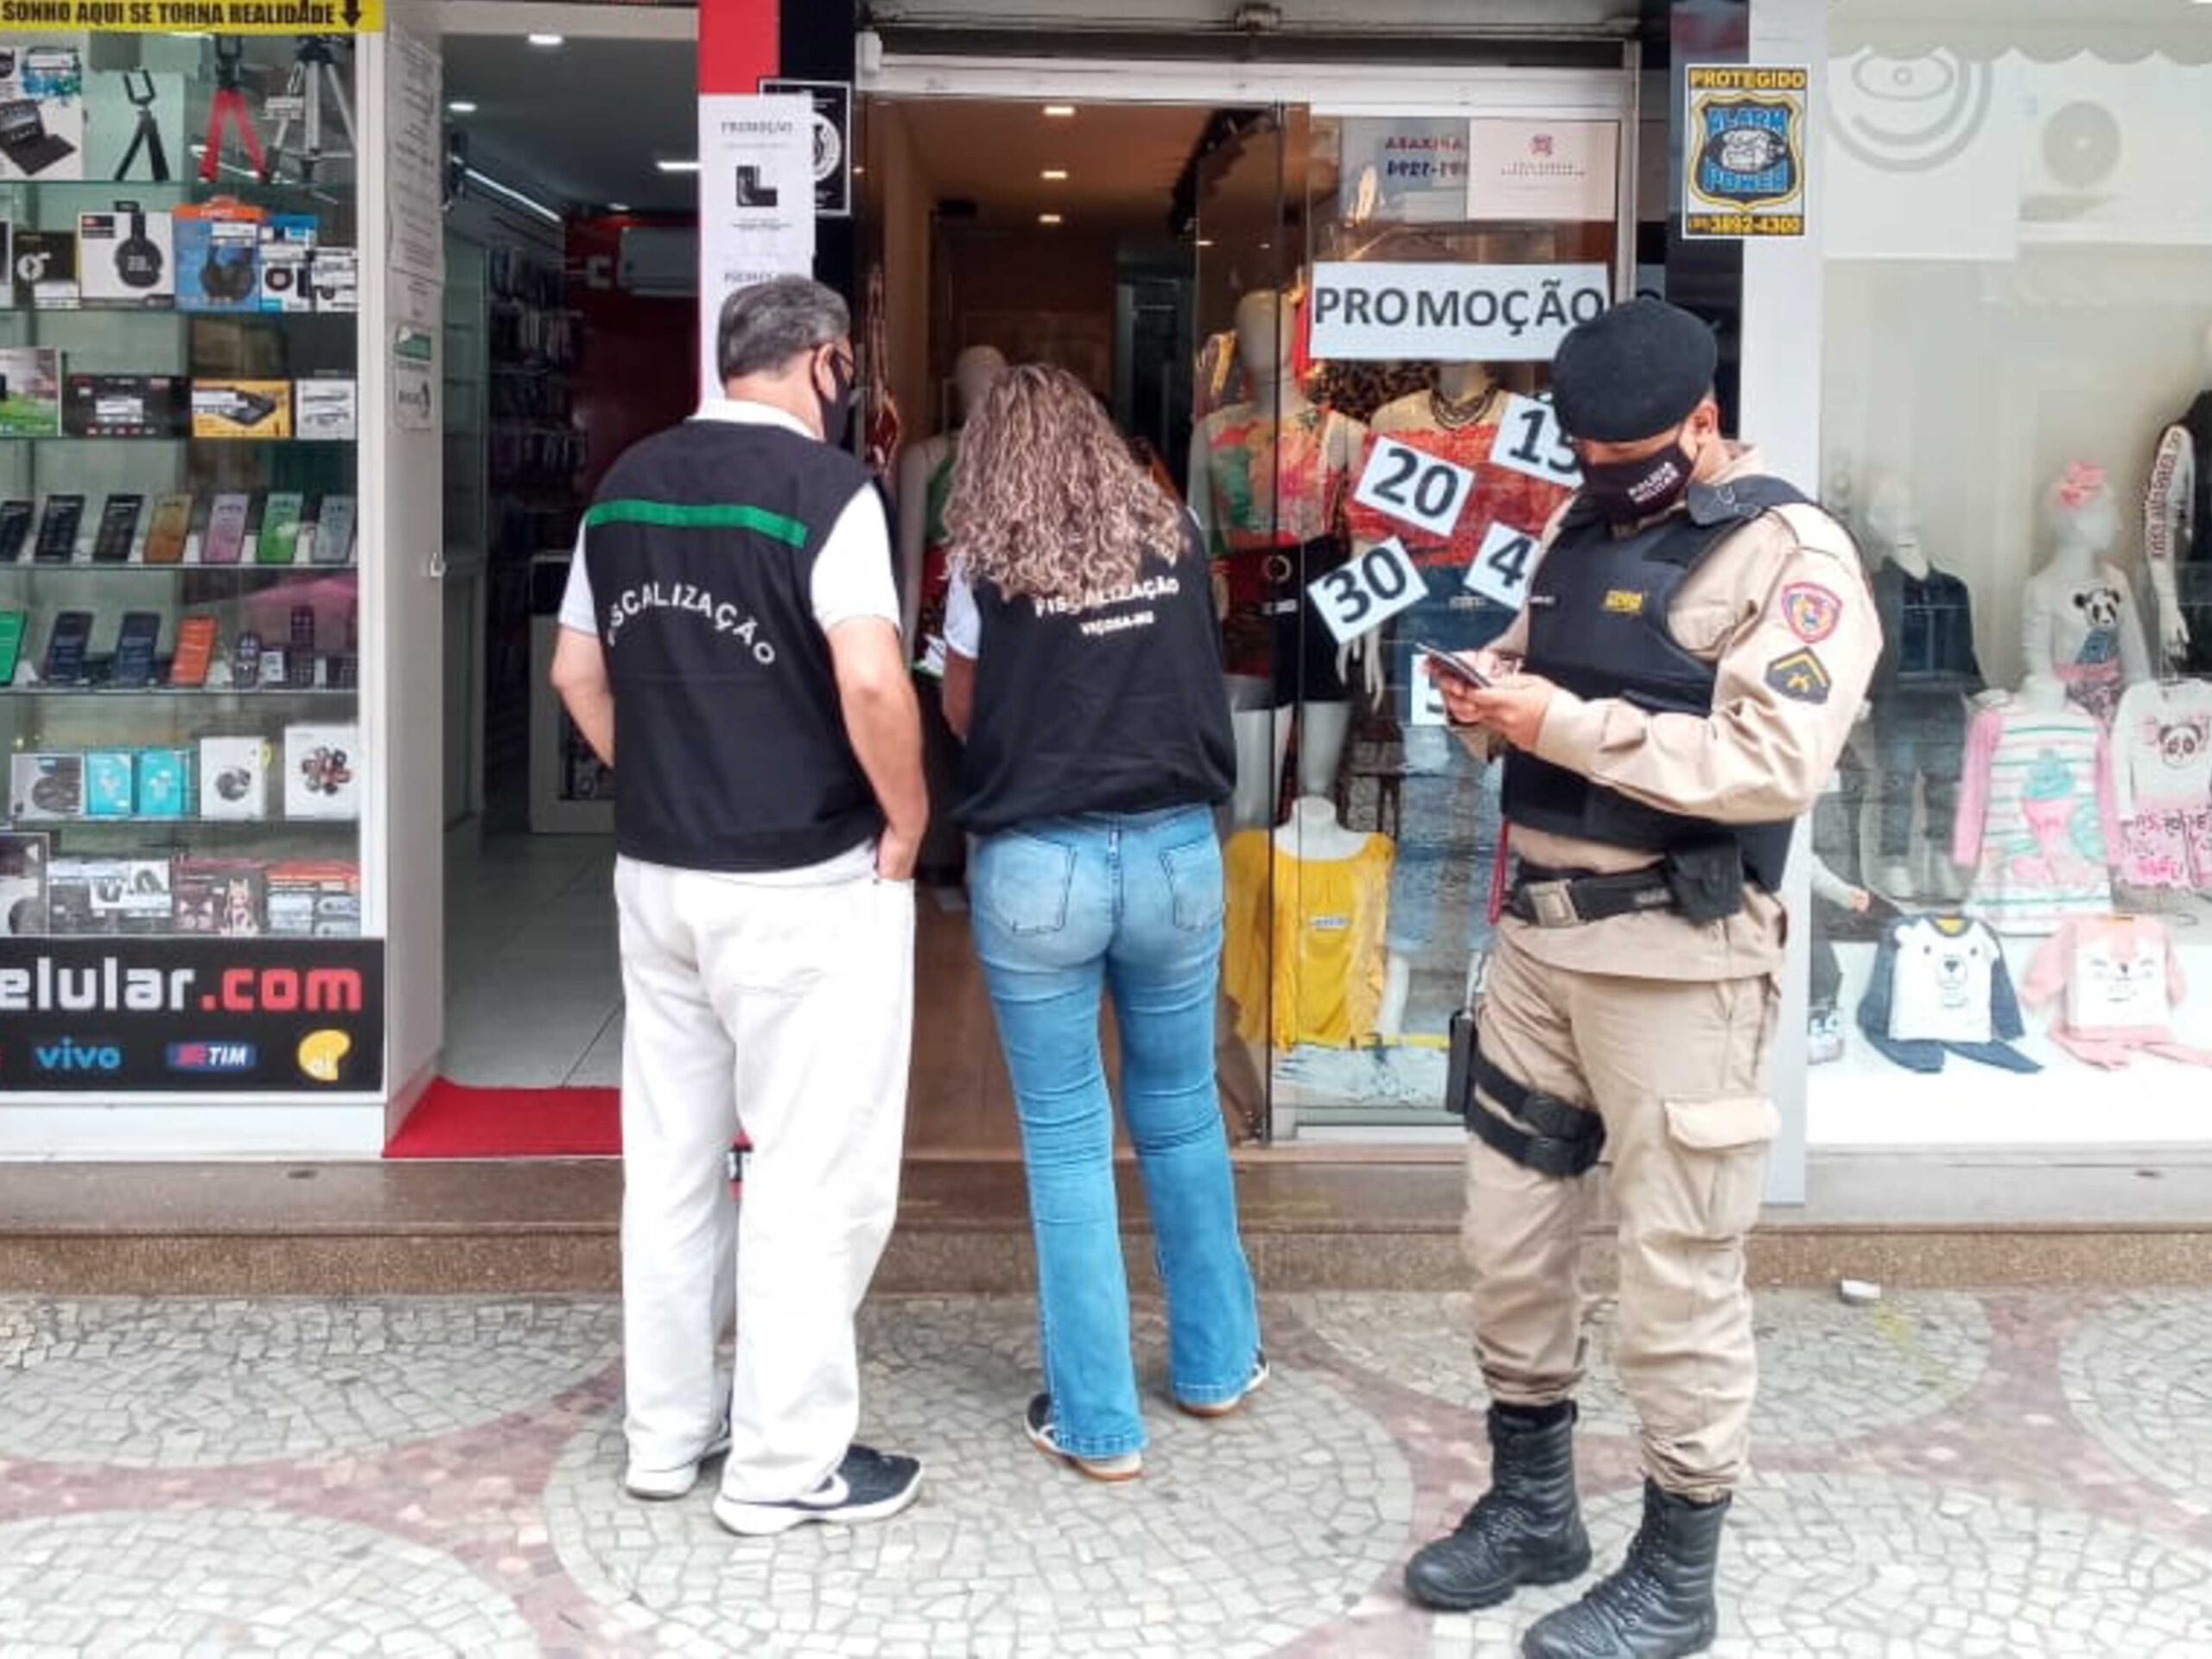 27 estabelecimentos comerciais foram multados ou interditados em Viçosa ontem